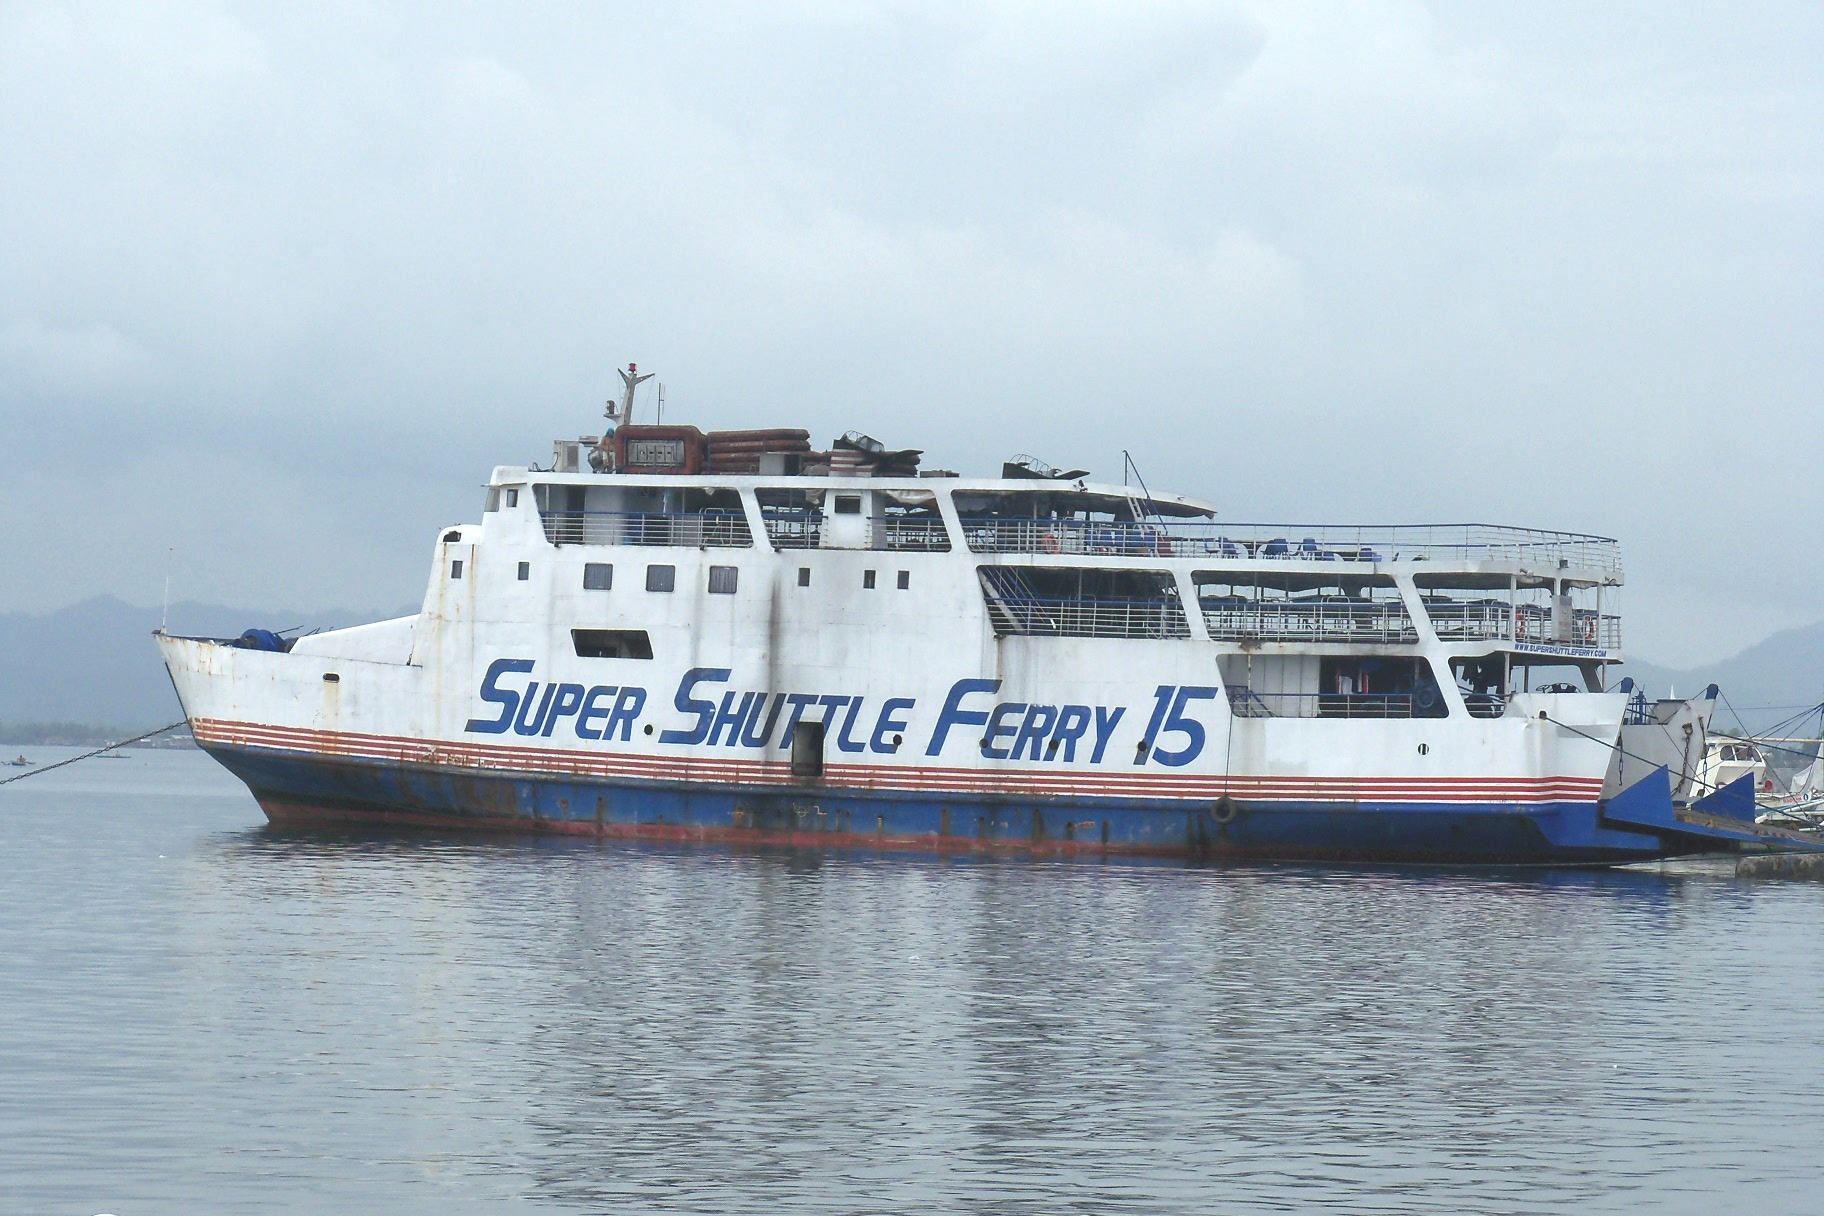 Super Shuttle Ferry 15